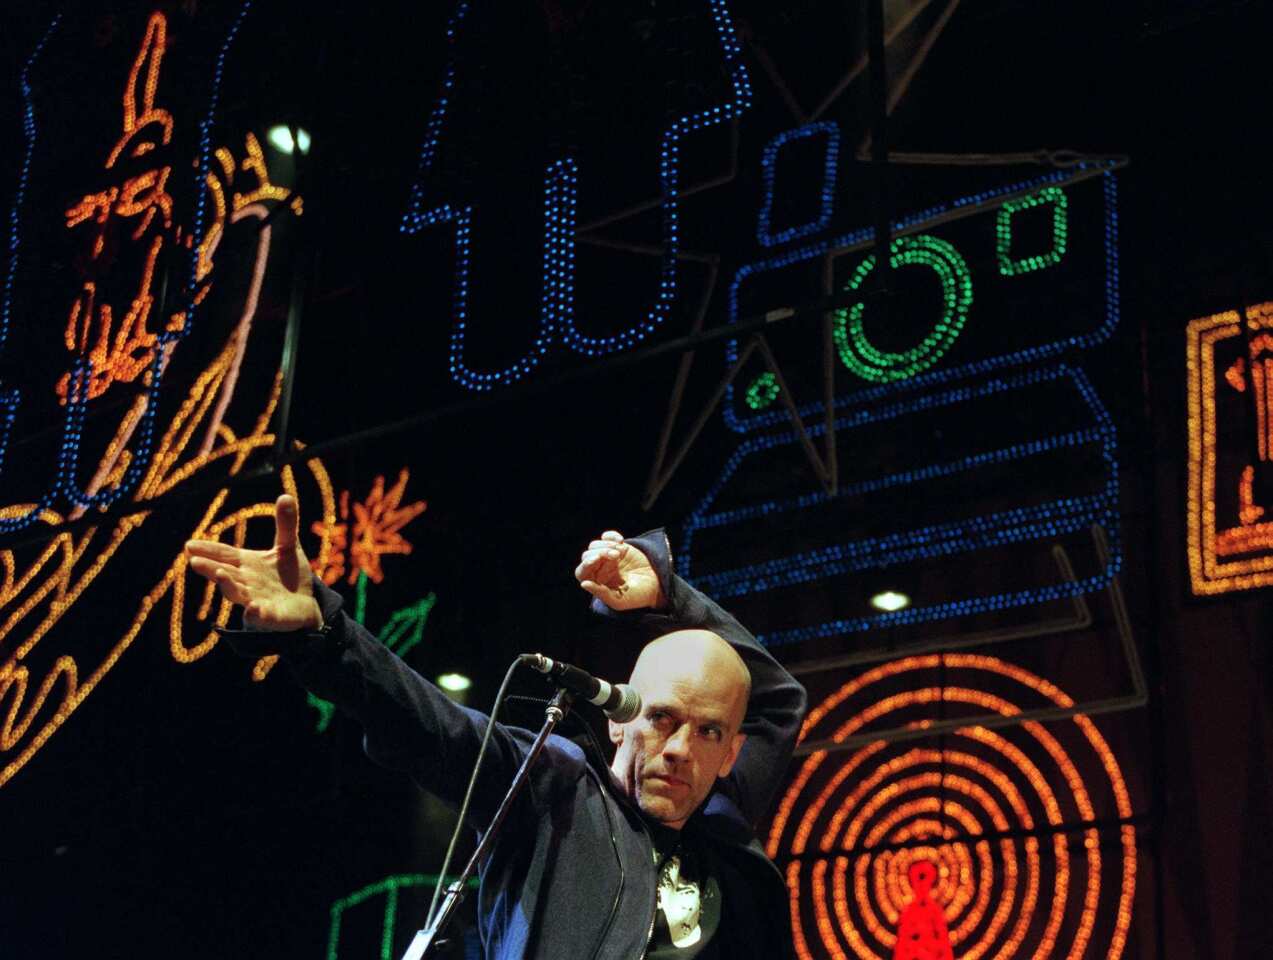 R.E.M.: At the Greek Theatre in 1999